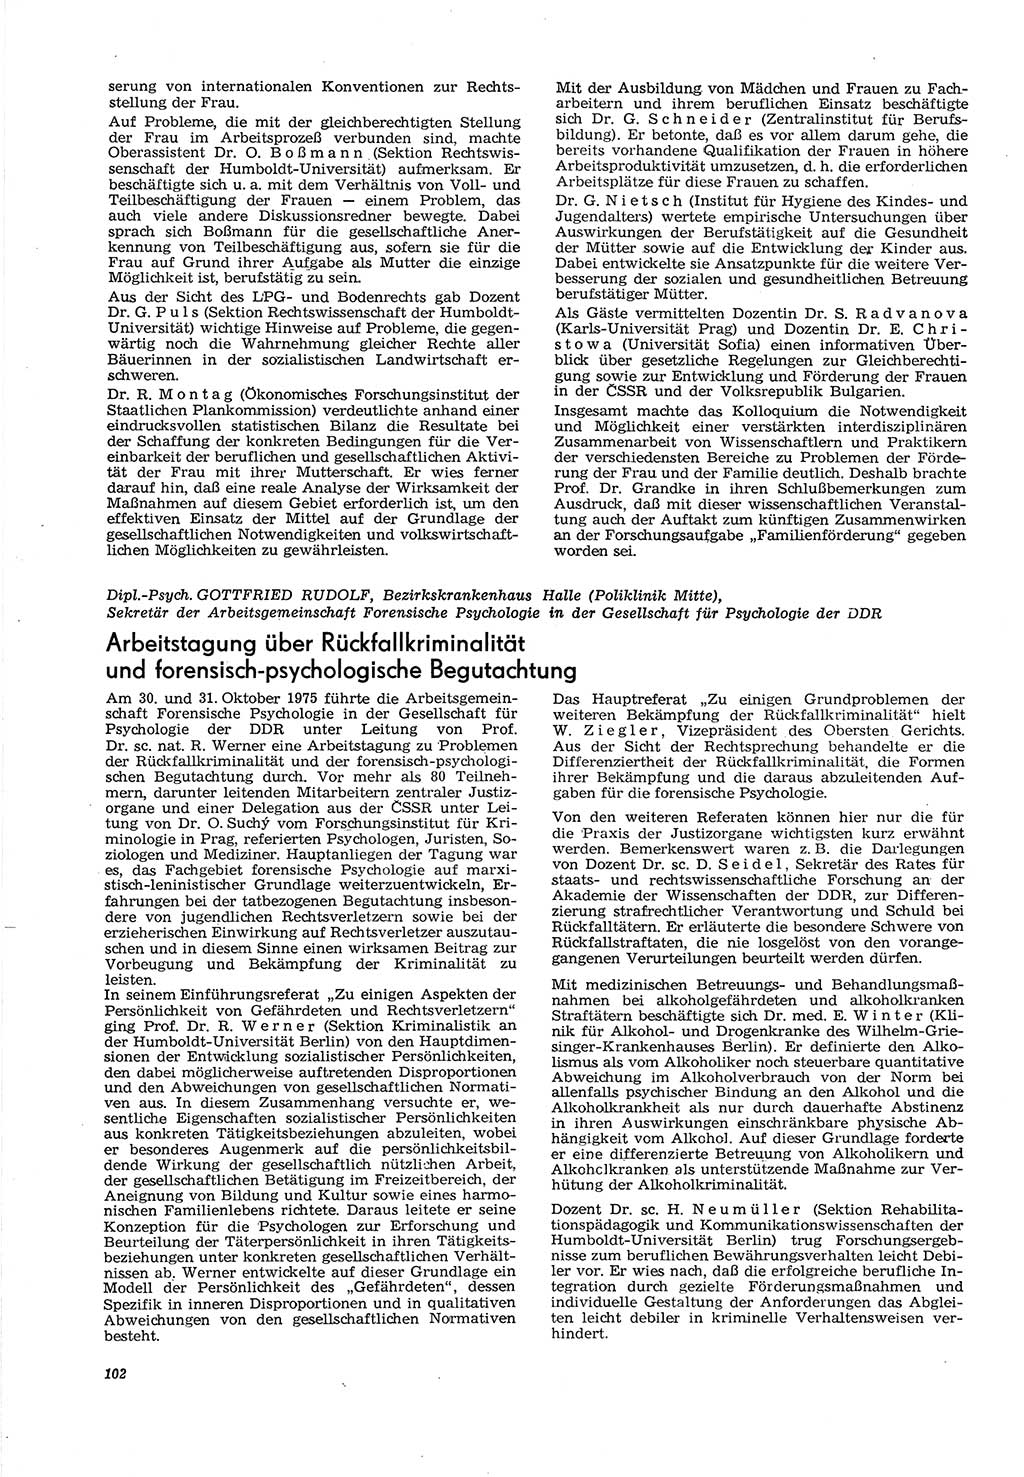 Neue Justiz (NJ), Zeitschrift für Recht und Rechtswissenschaft [Deutsche Demokratische Republik (DDR)], 30. Jahrgang 1976, Seite 102 (NJ DDR 1976, S. 102)